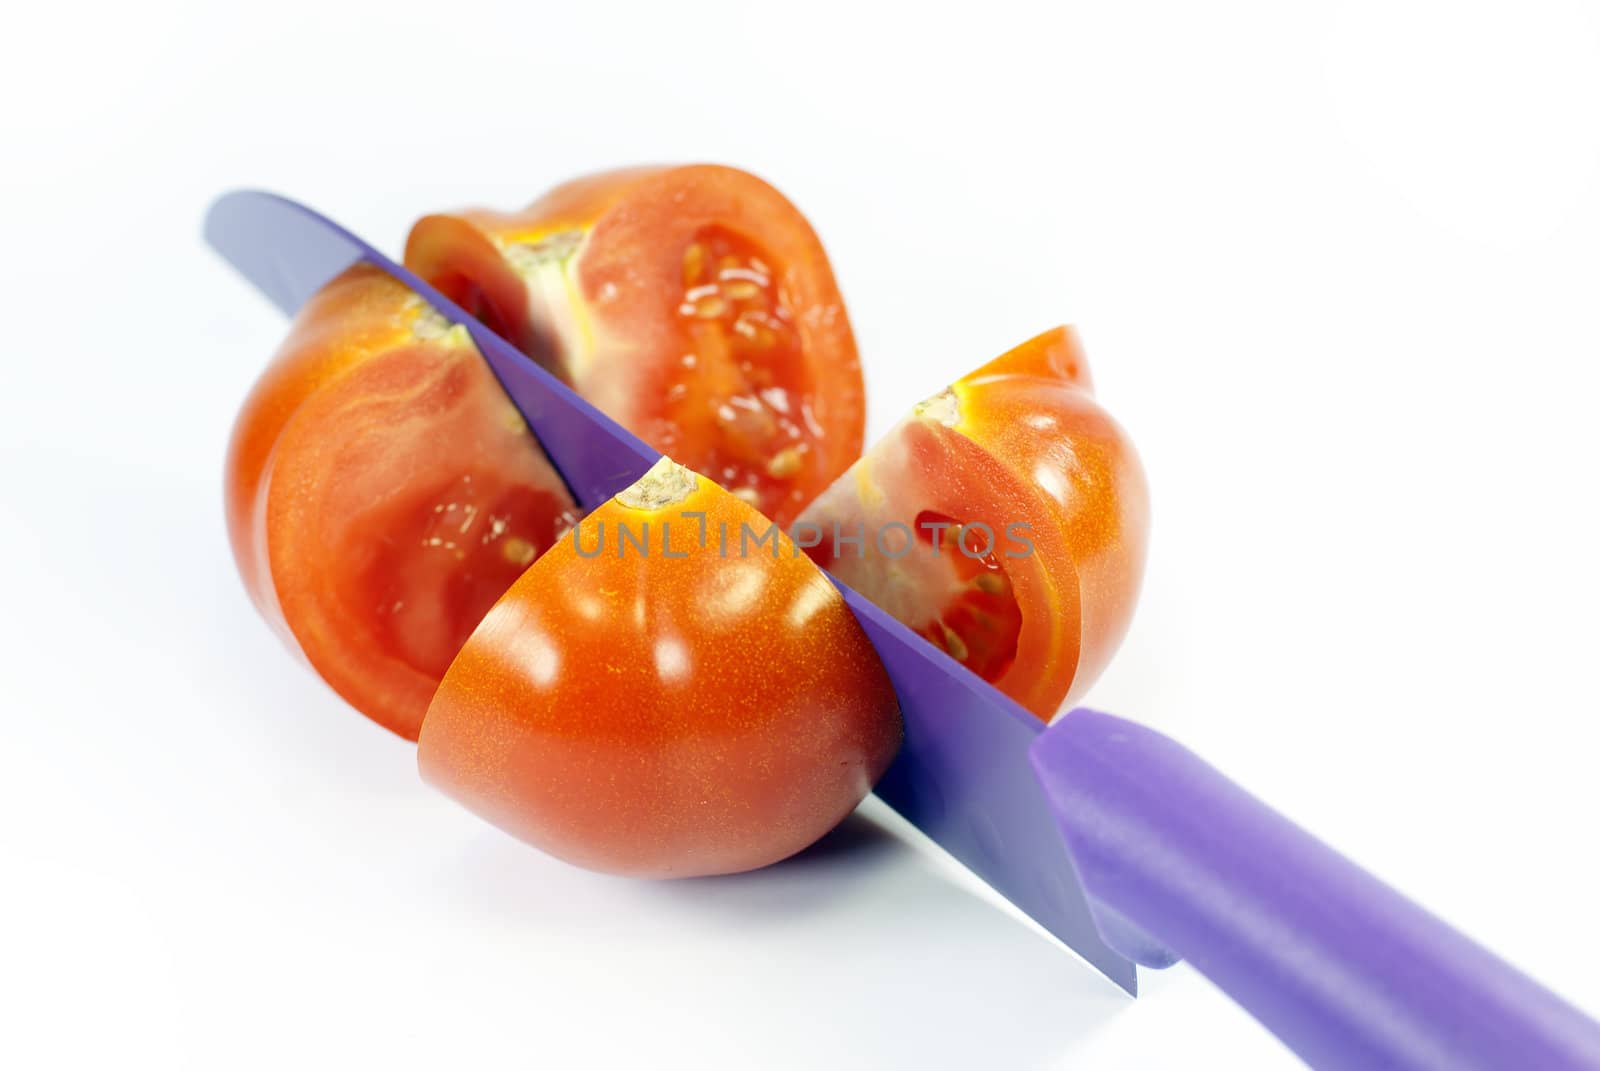  share a tomato